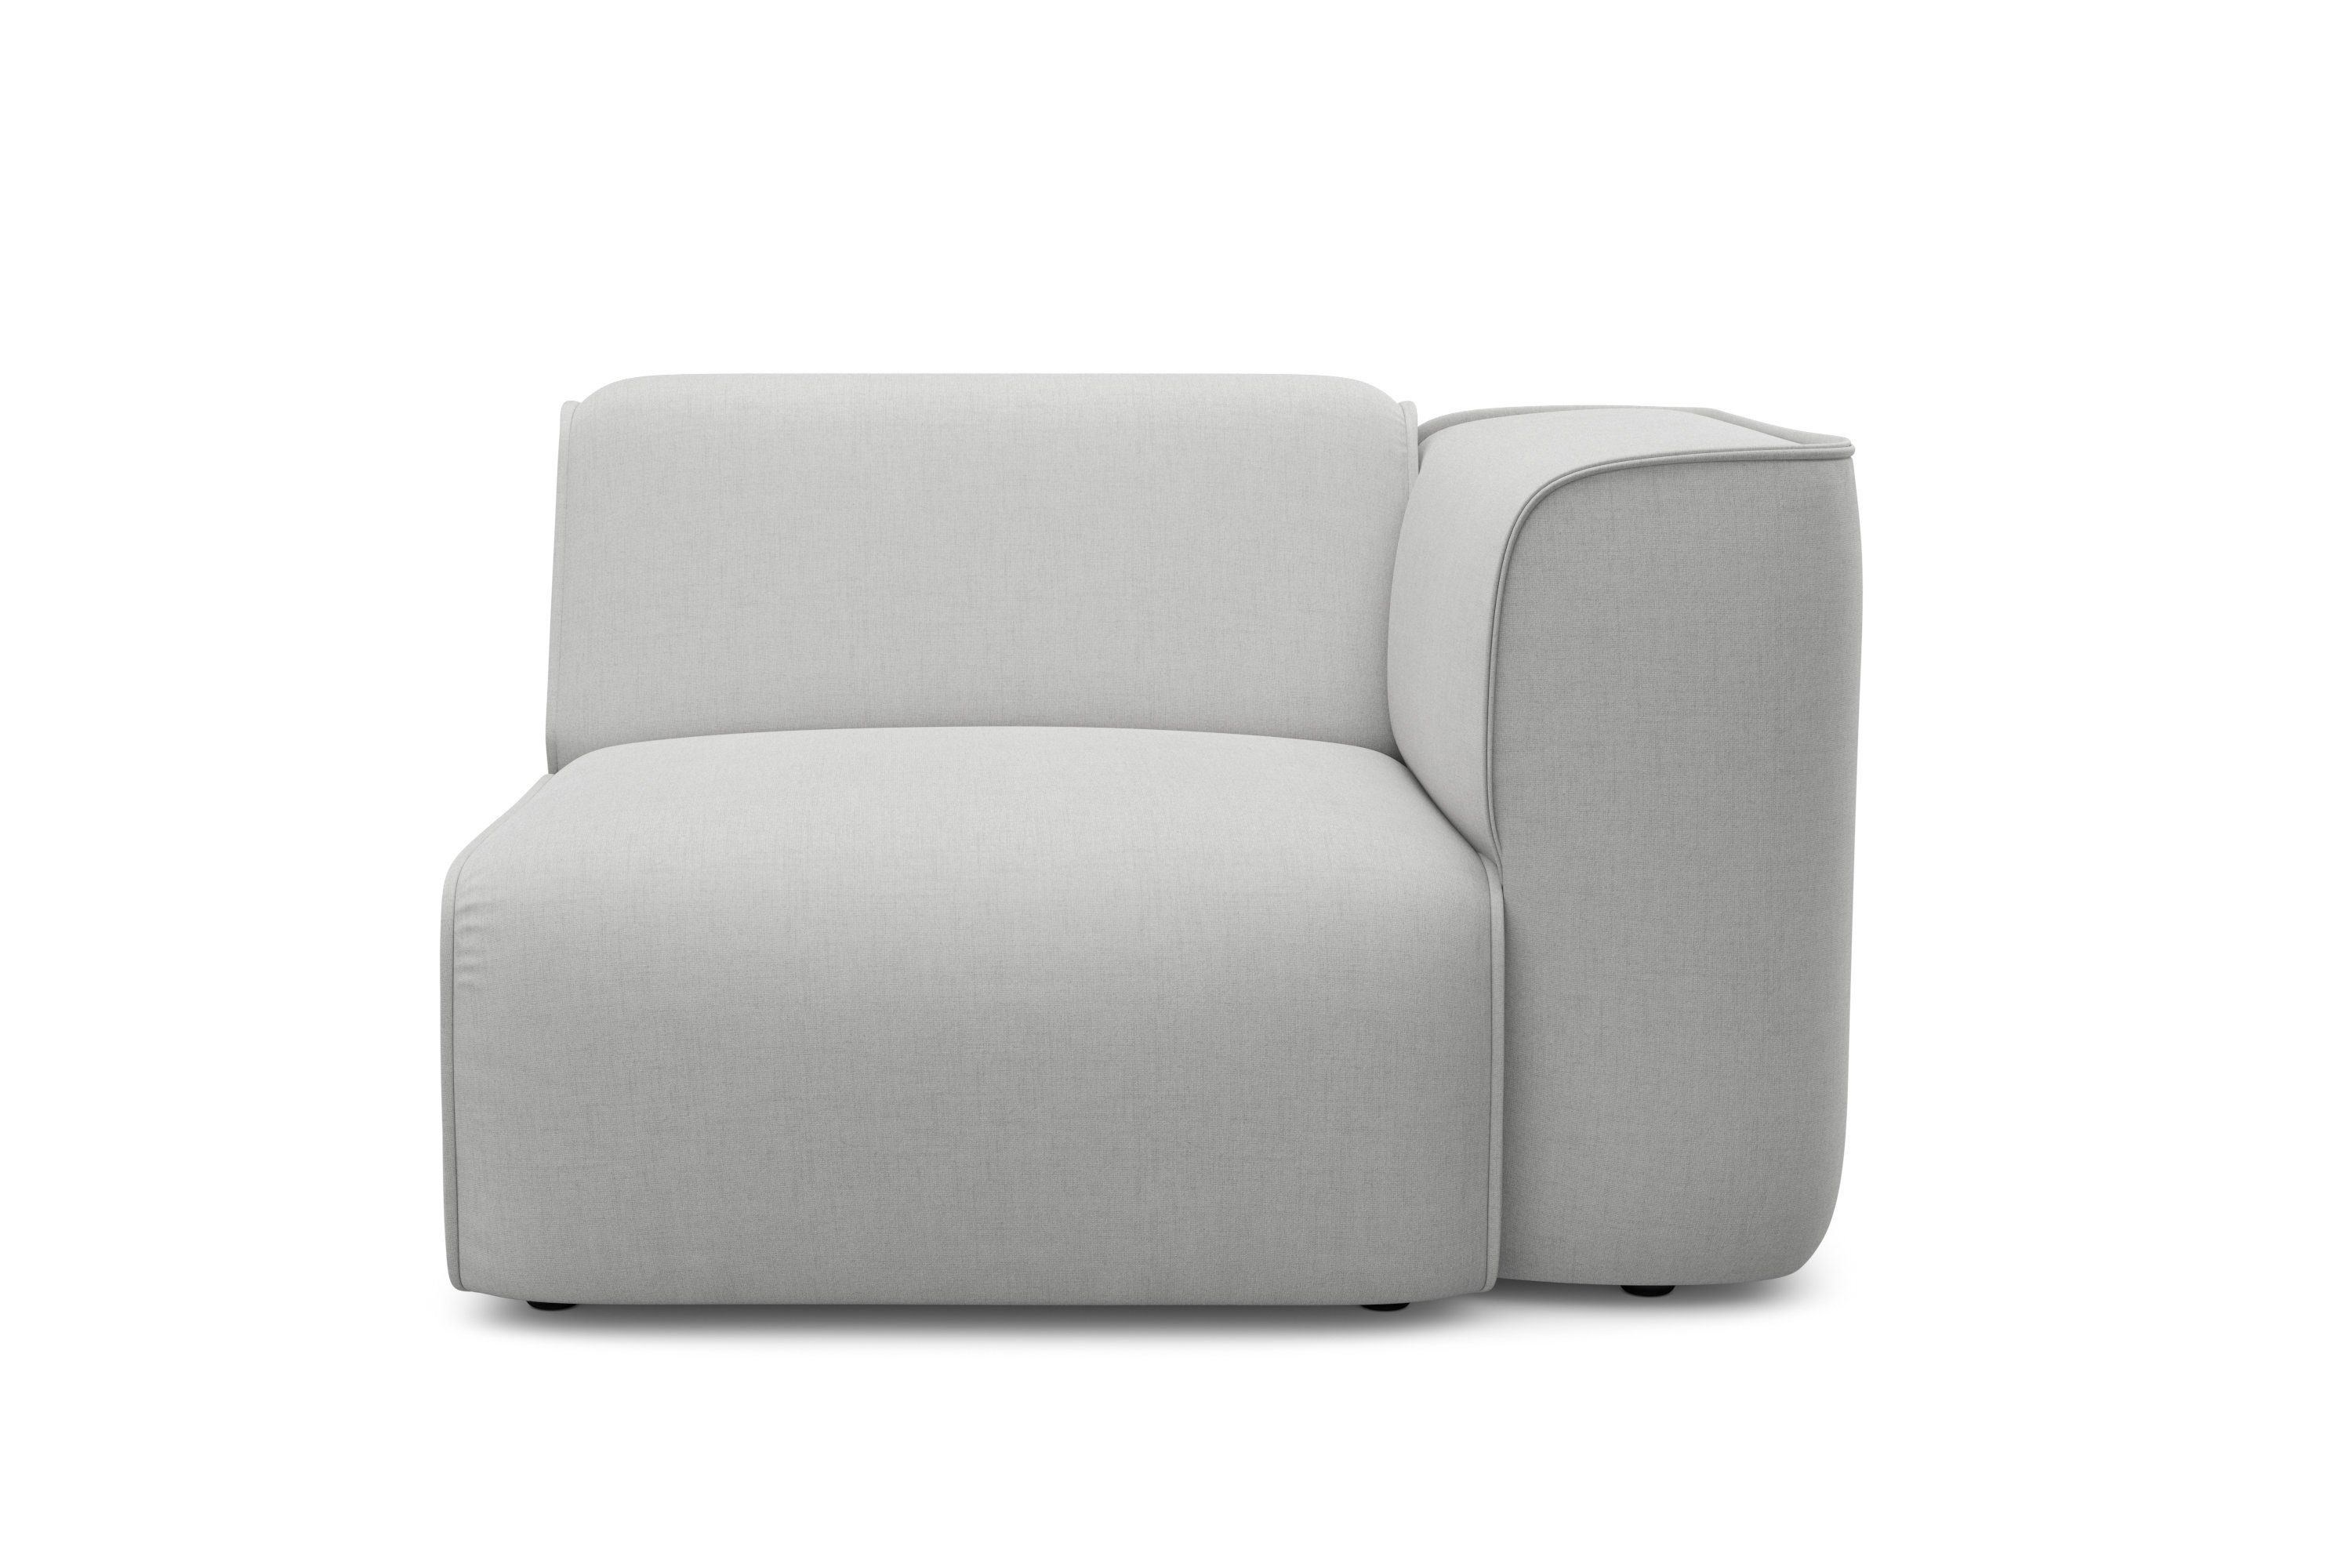 COUCH ♥ Fauteuil Vette bekleding modulair of solo te gebruiken, vele modules voor individuele samenstelling couch favorieten